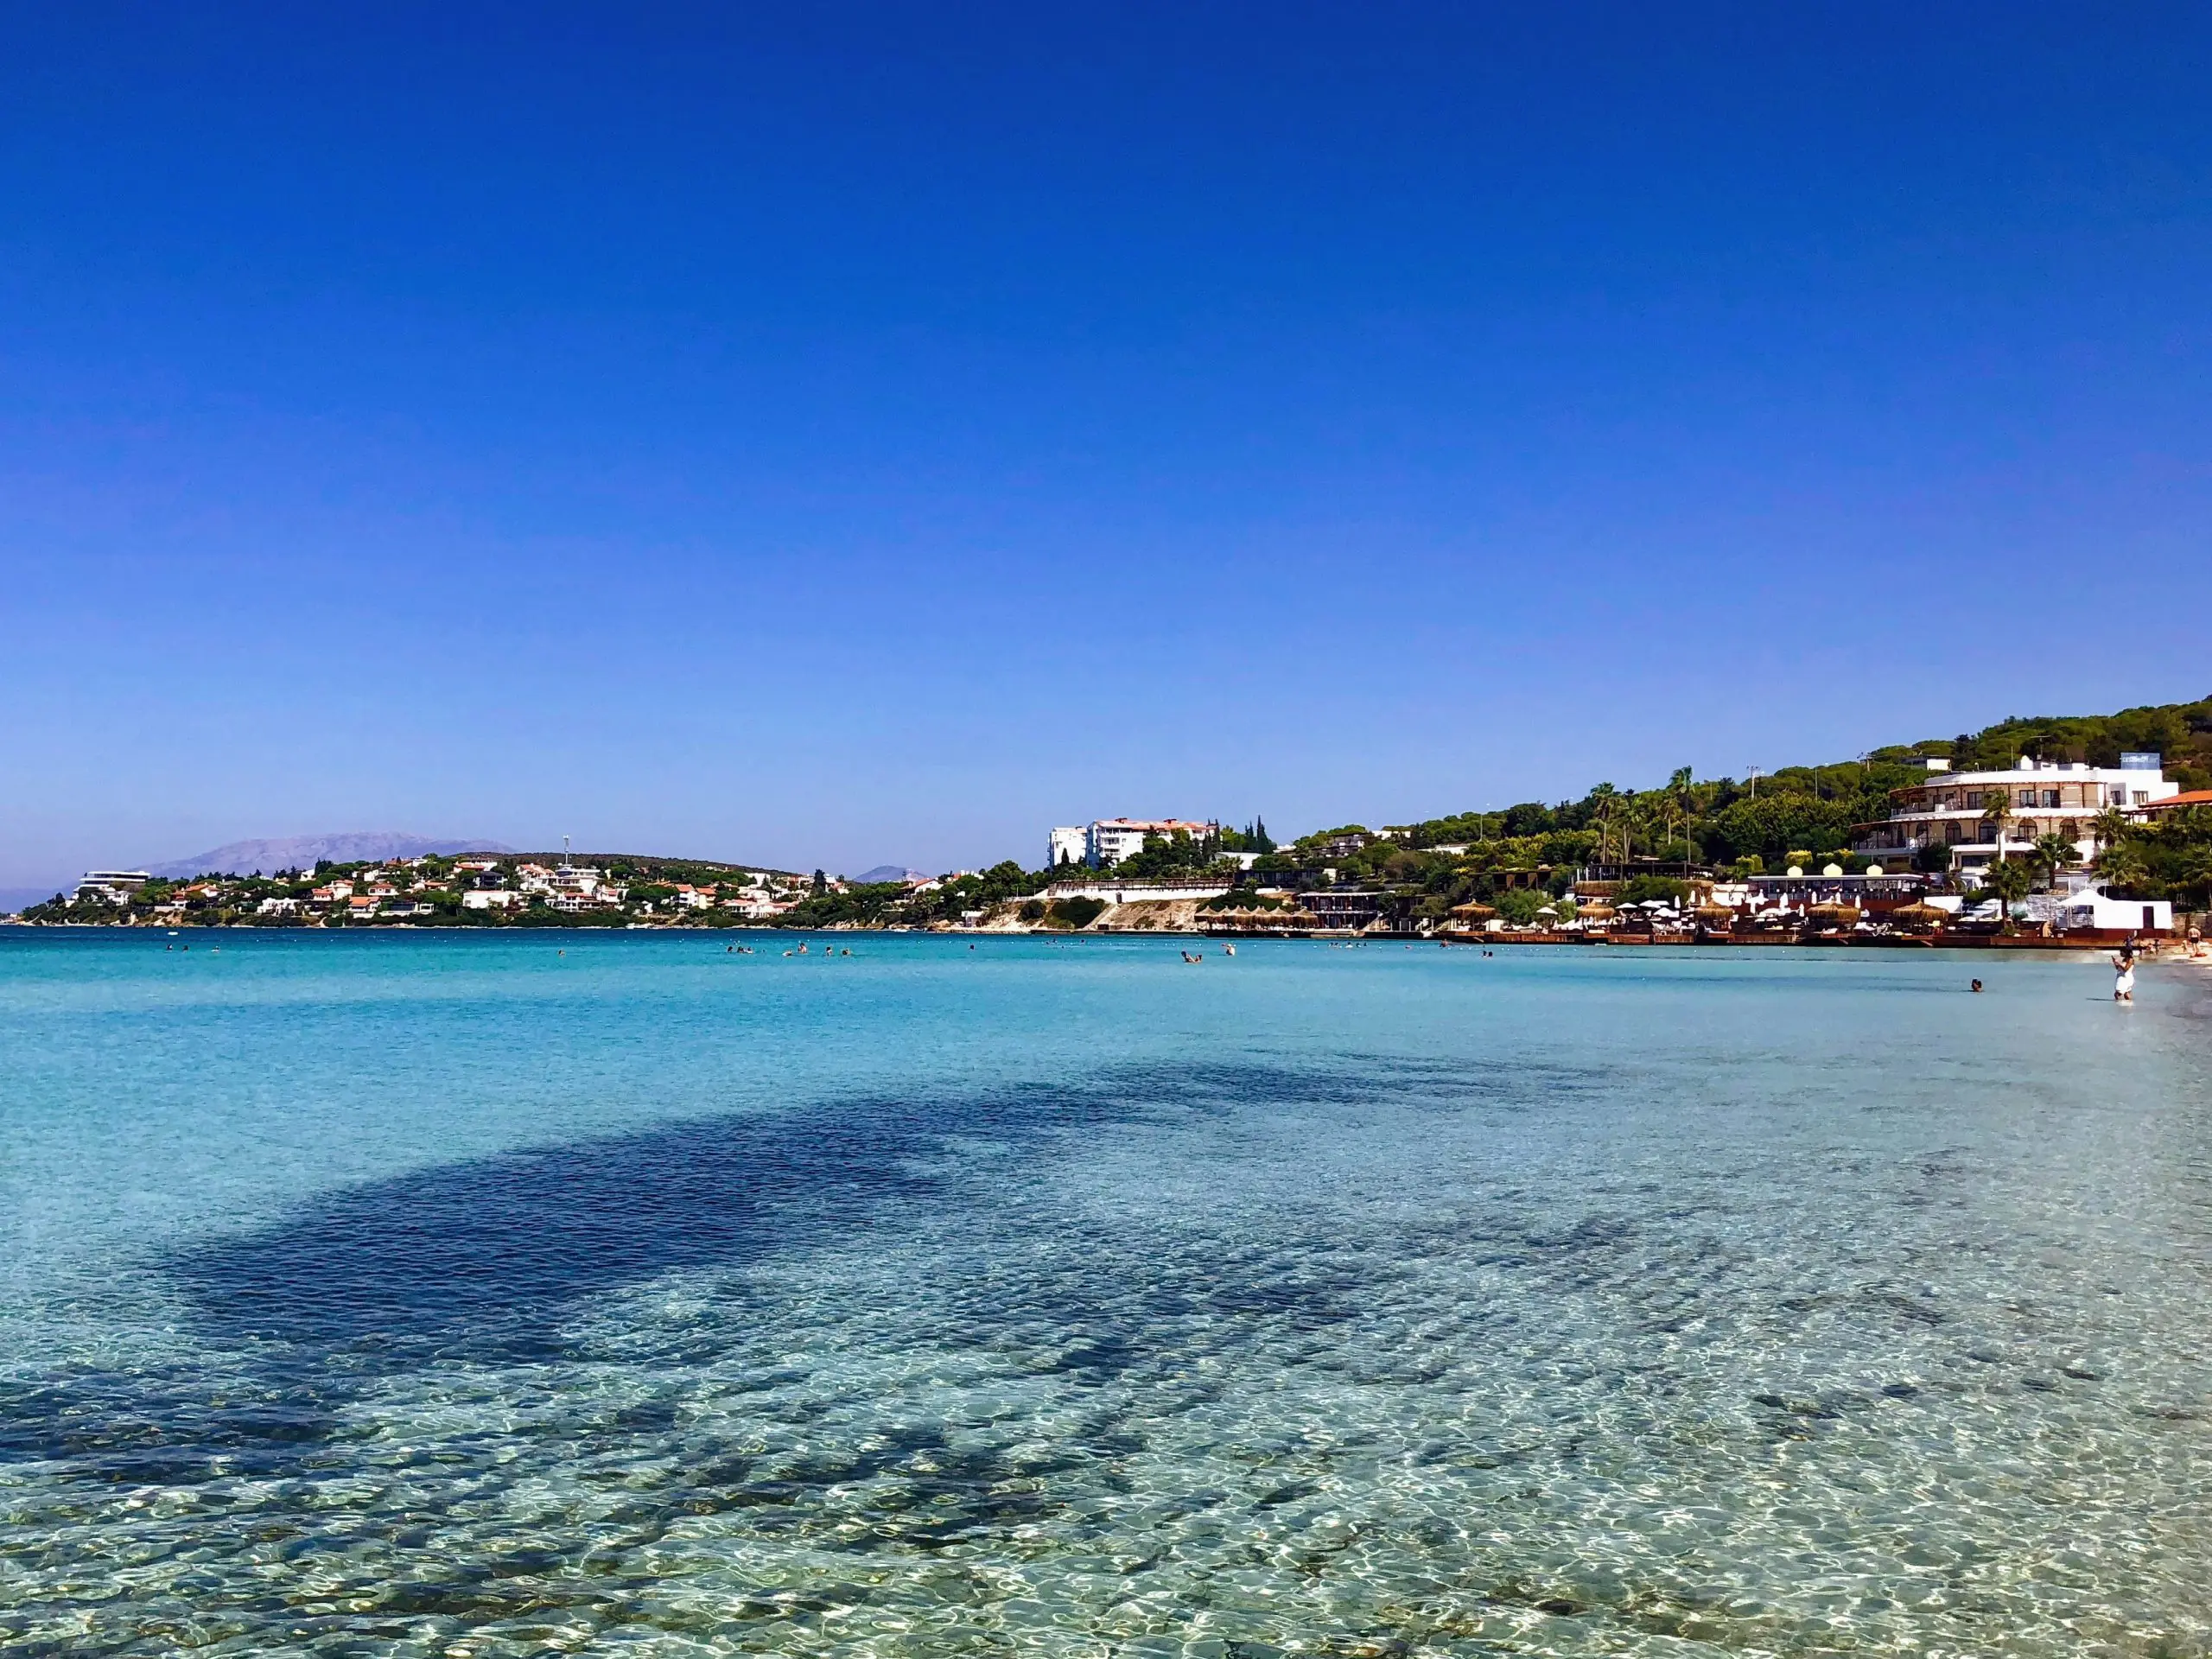 İzmir Pırlanta Ücretsiz Halk Plajı Nerede? 5 Yıldızlı Pırlanta Halk Plajında Bedava Sunulan Hizmetler1